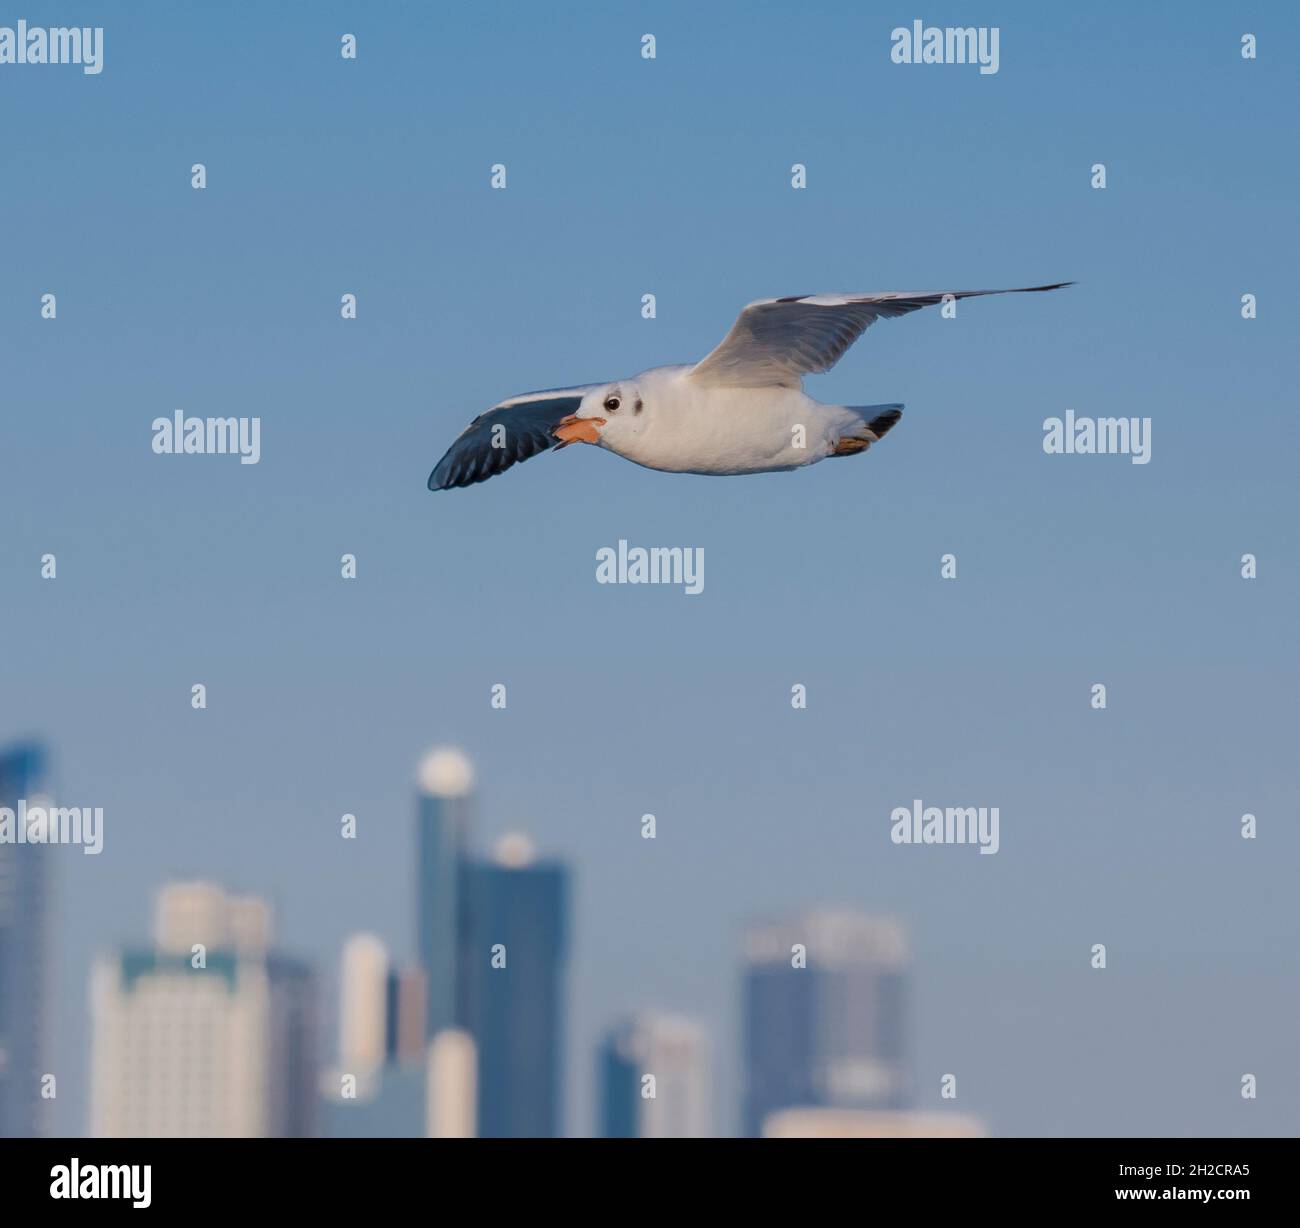 Una gaviota volando en el cielo de la capital ( Abu Dhabi), llevando un pedazo de pan. Foto de stock